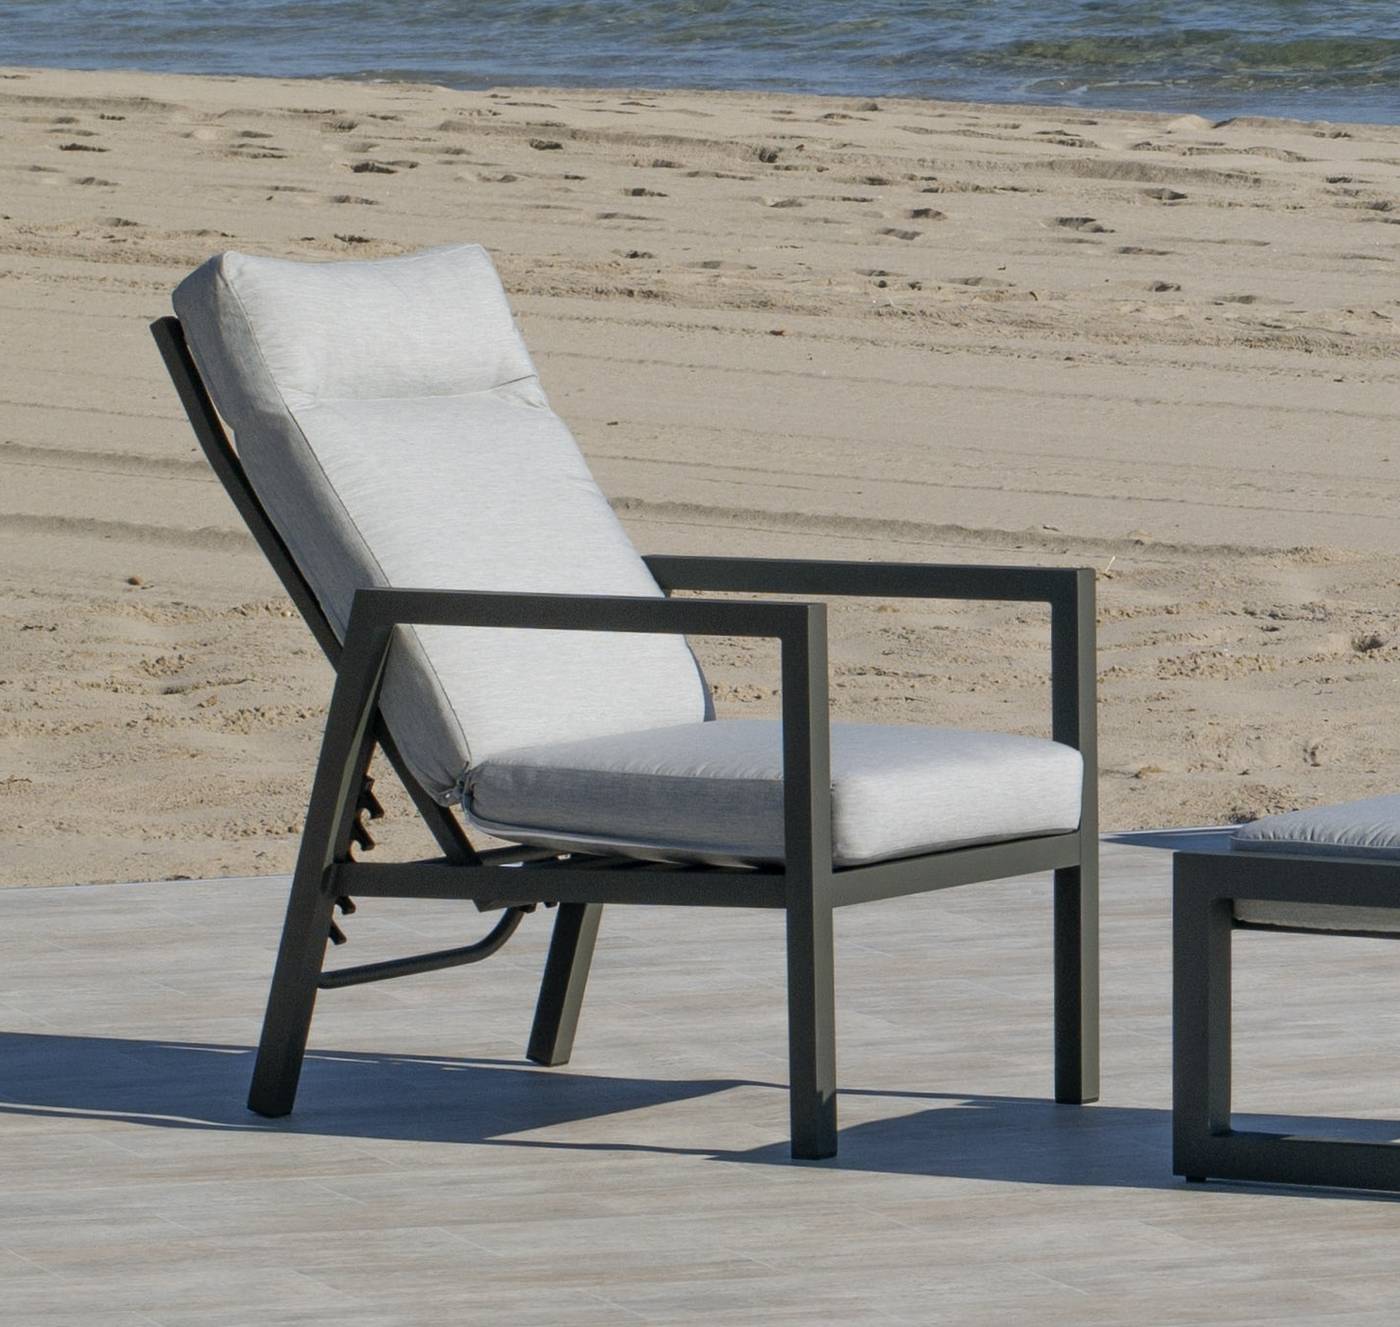 Sillón relax lujo, con respaldo reclinable. Fabricado de aluminio en color blanco, plata, antracita o bronce.